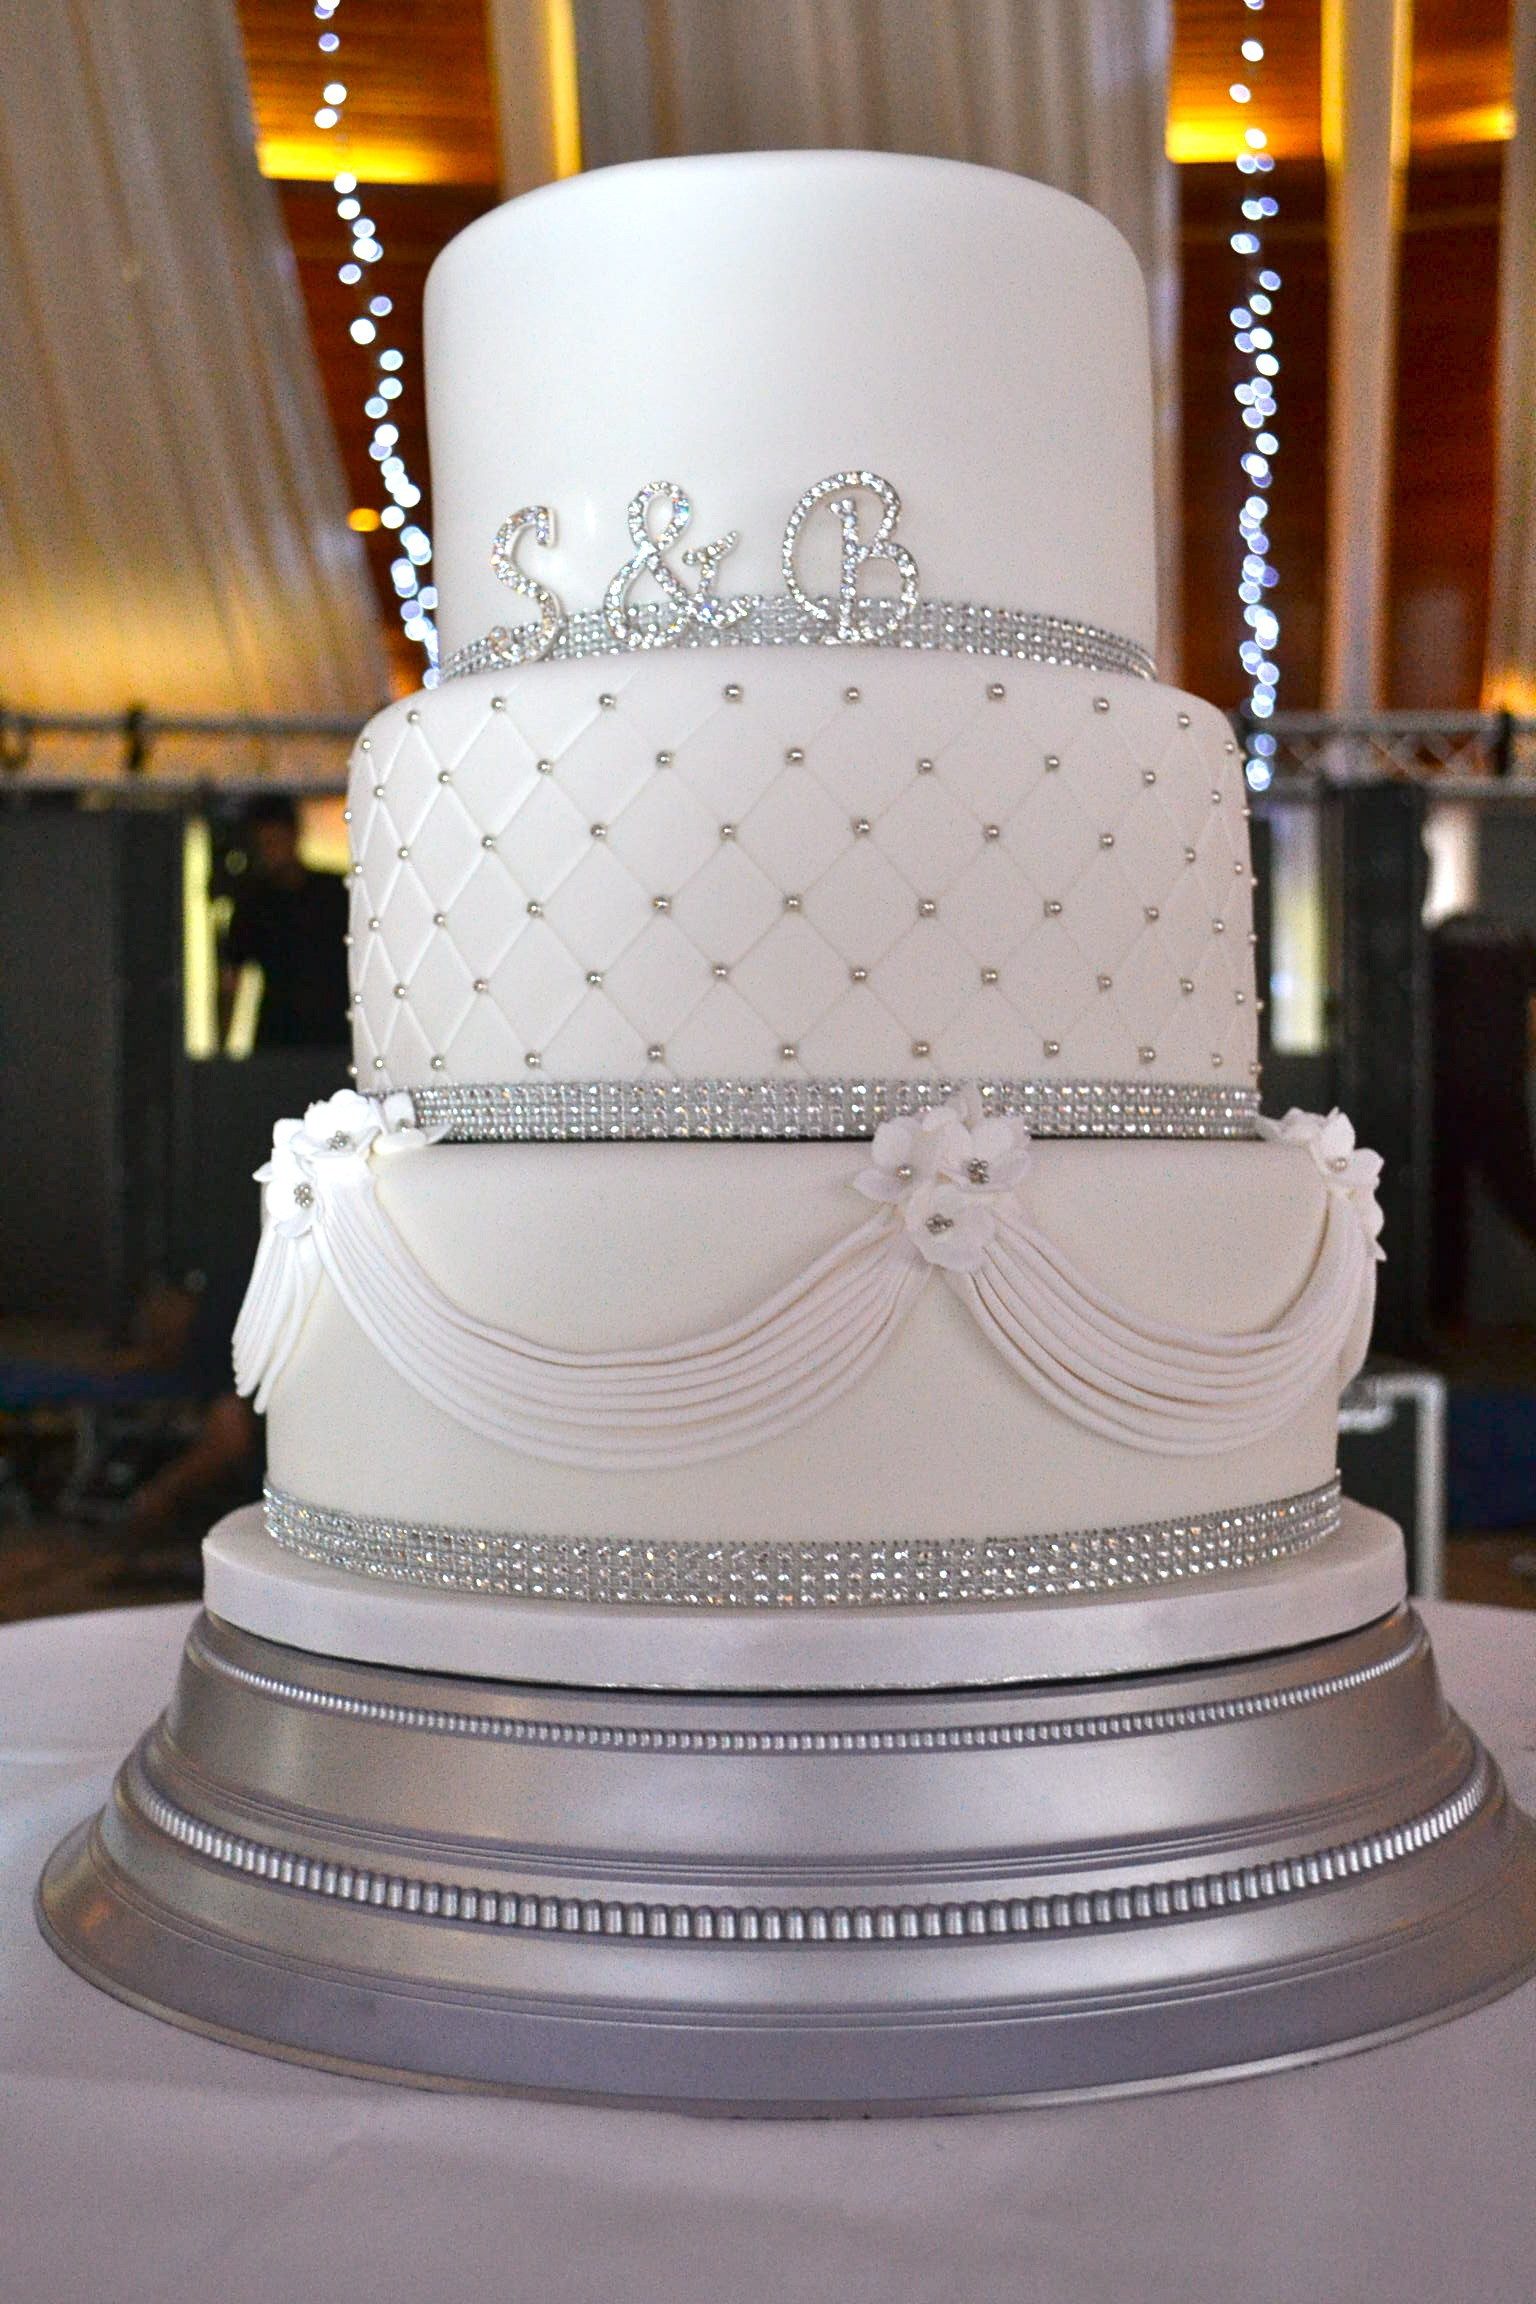 Wedding Cakes Photo
 Diamante and Drapes Wedding Cake Wedding Cakes Cakeology